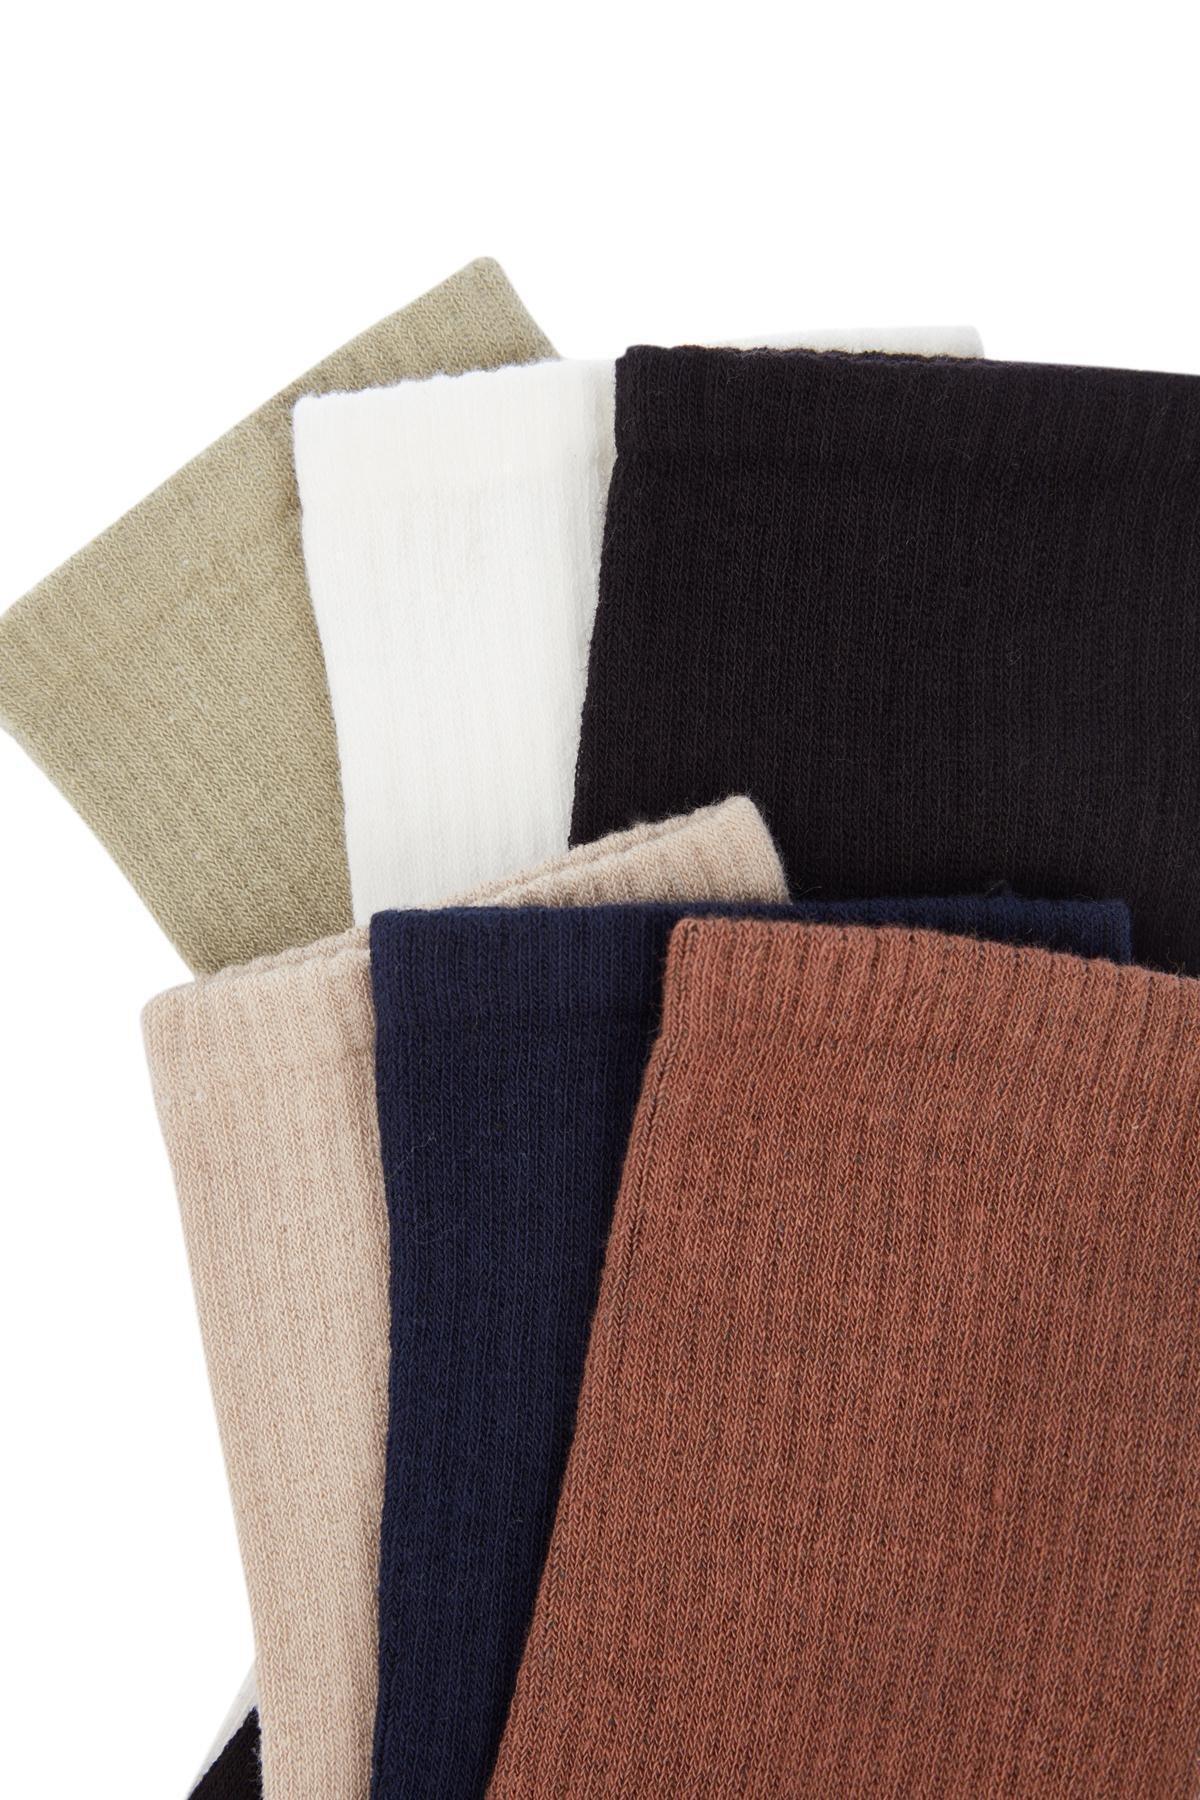 Trendyol - Multicolour College Socks, Set Of 6